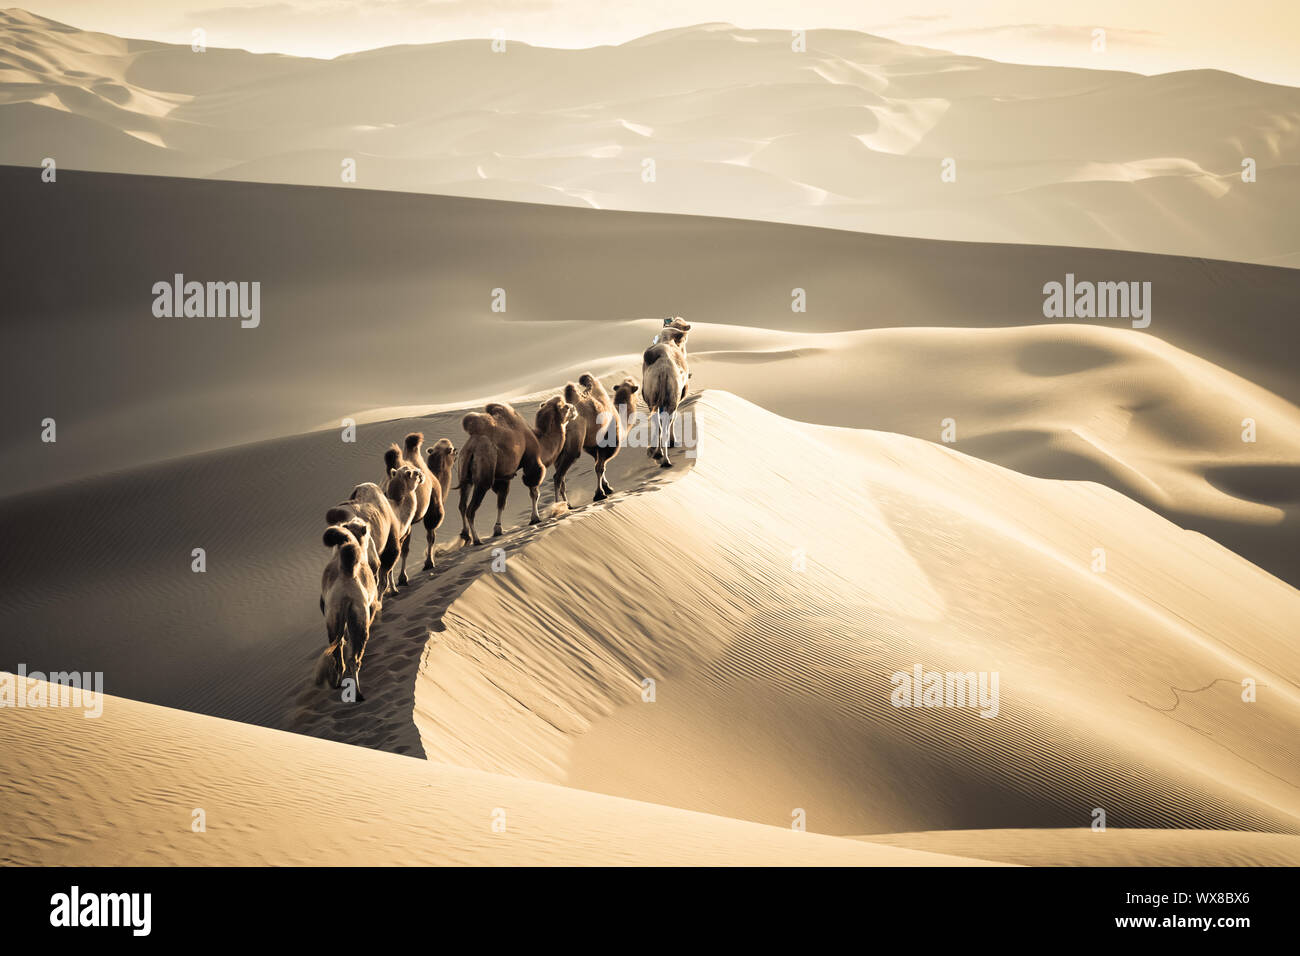 desert camels team Stock Photo